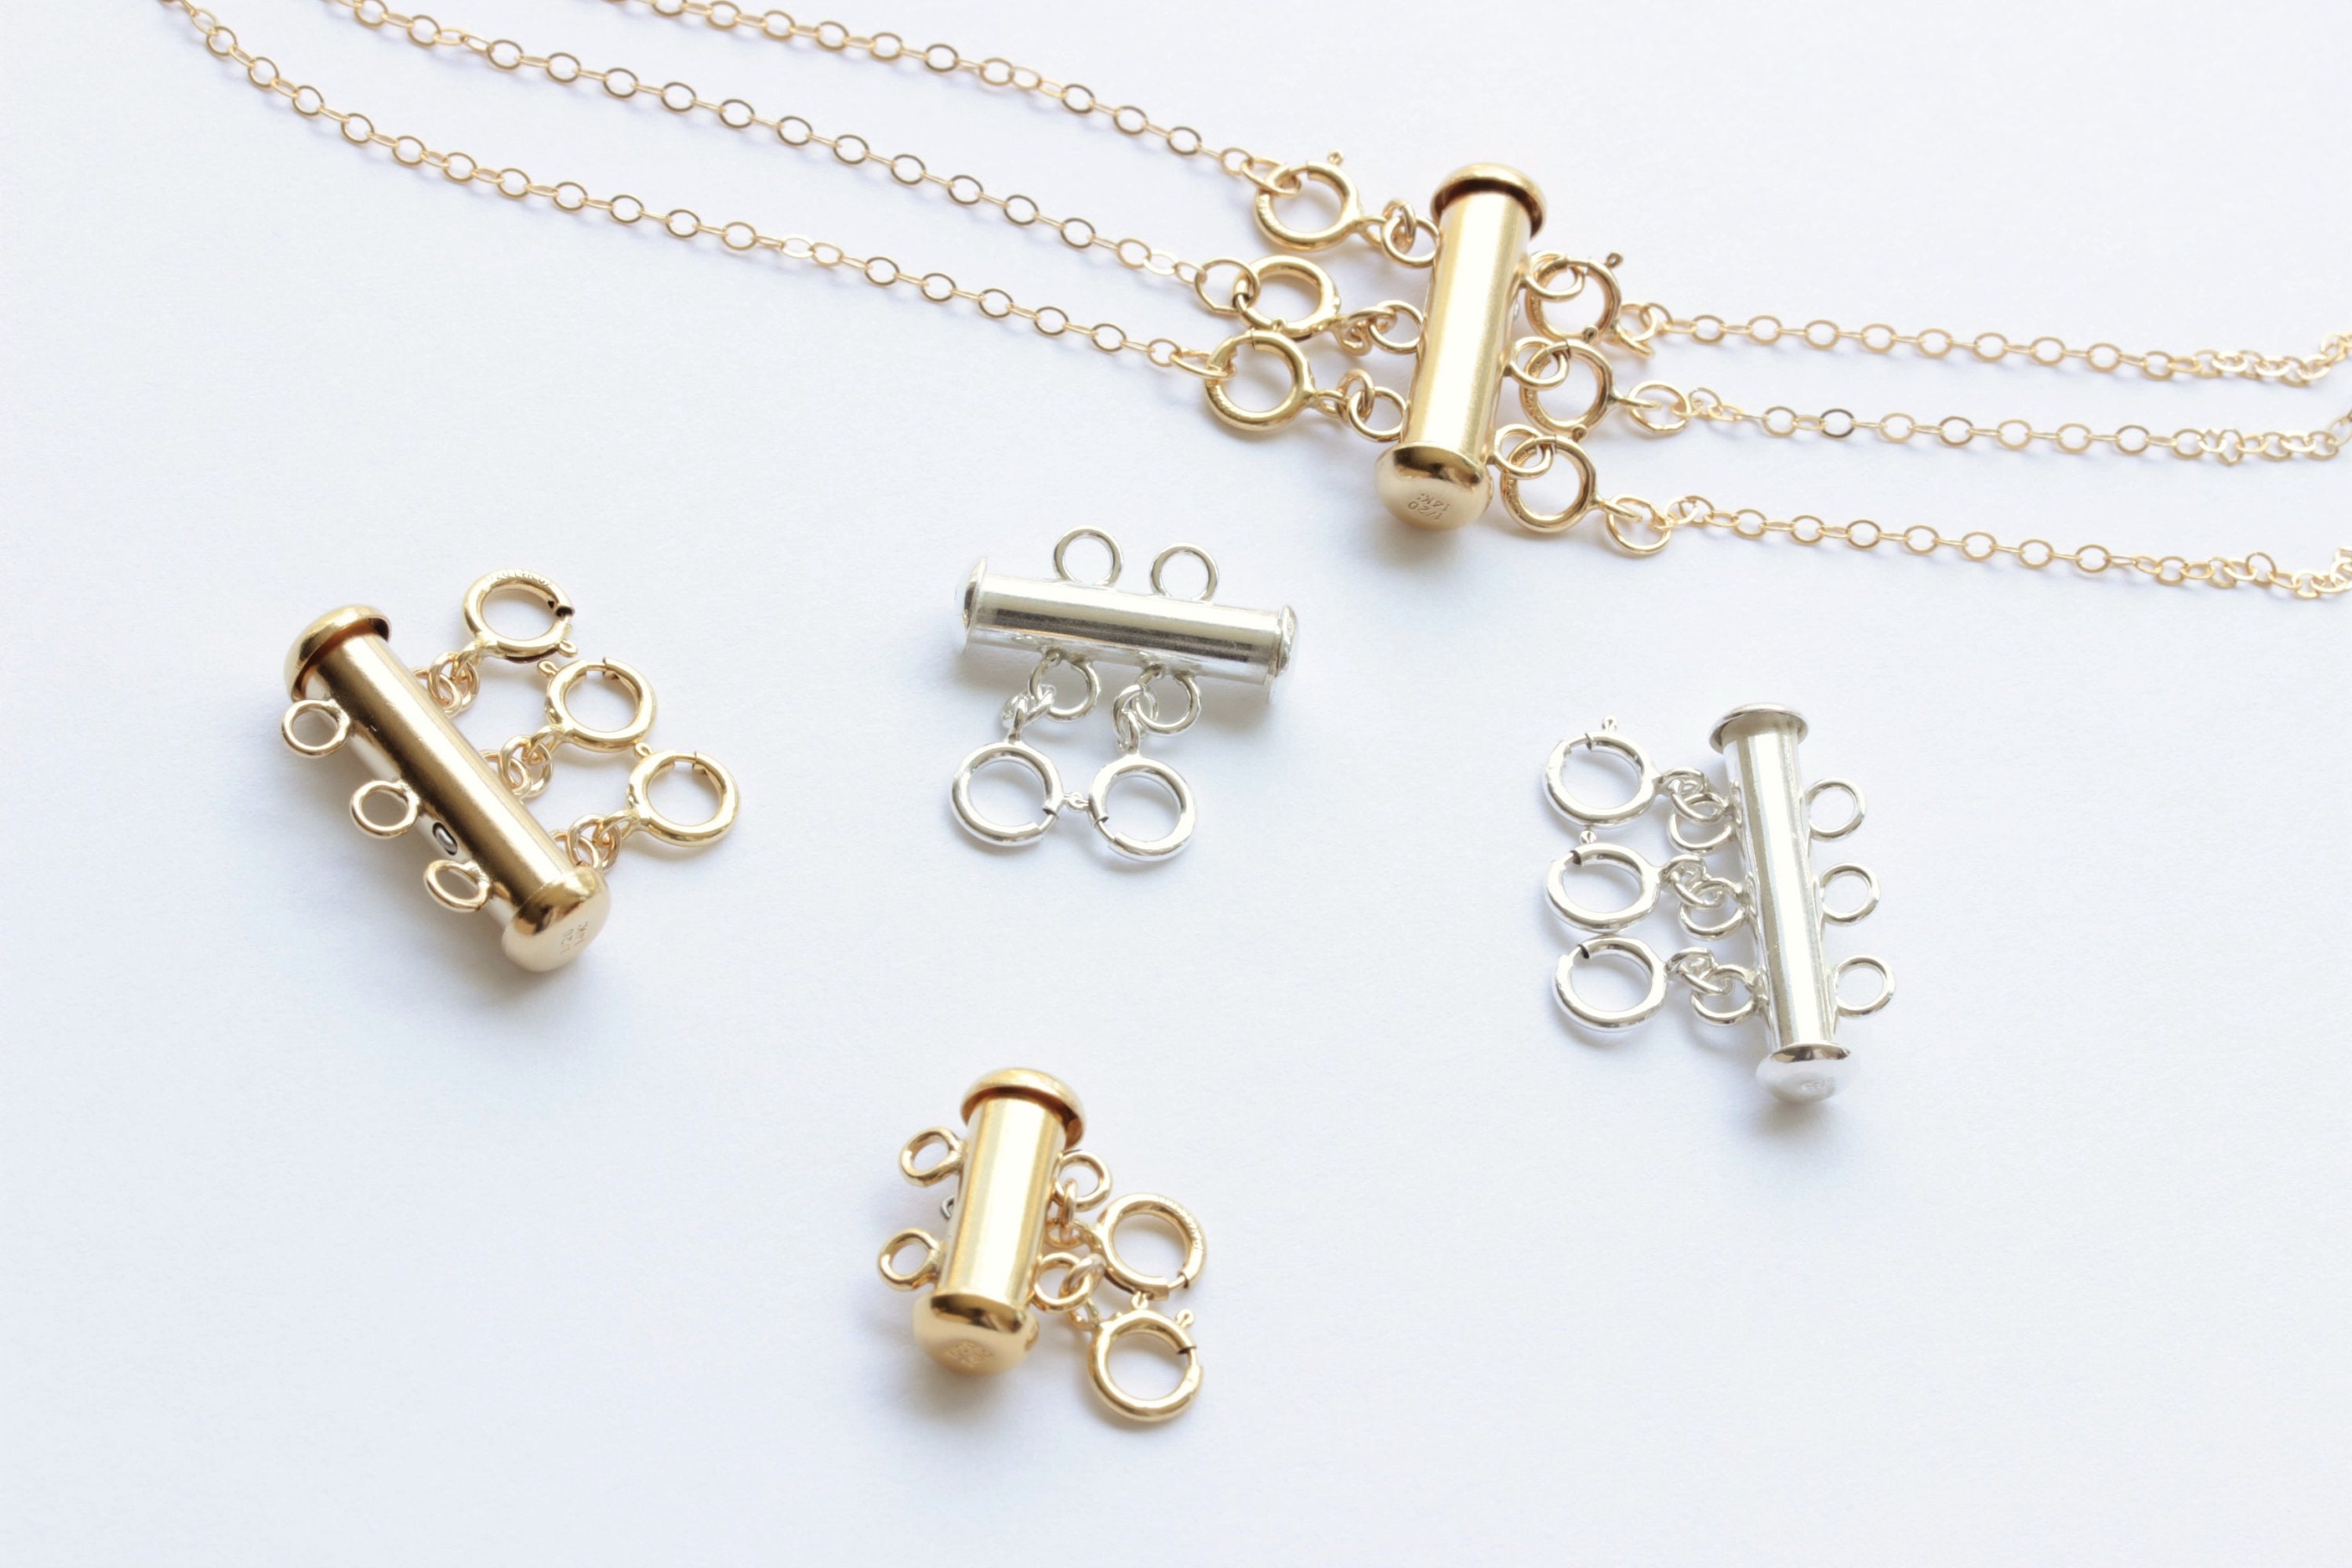 14K Gold Filled Necklace Separator – Details